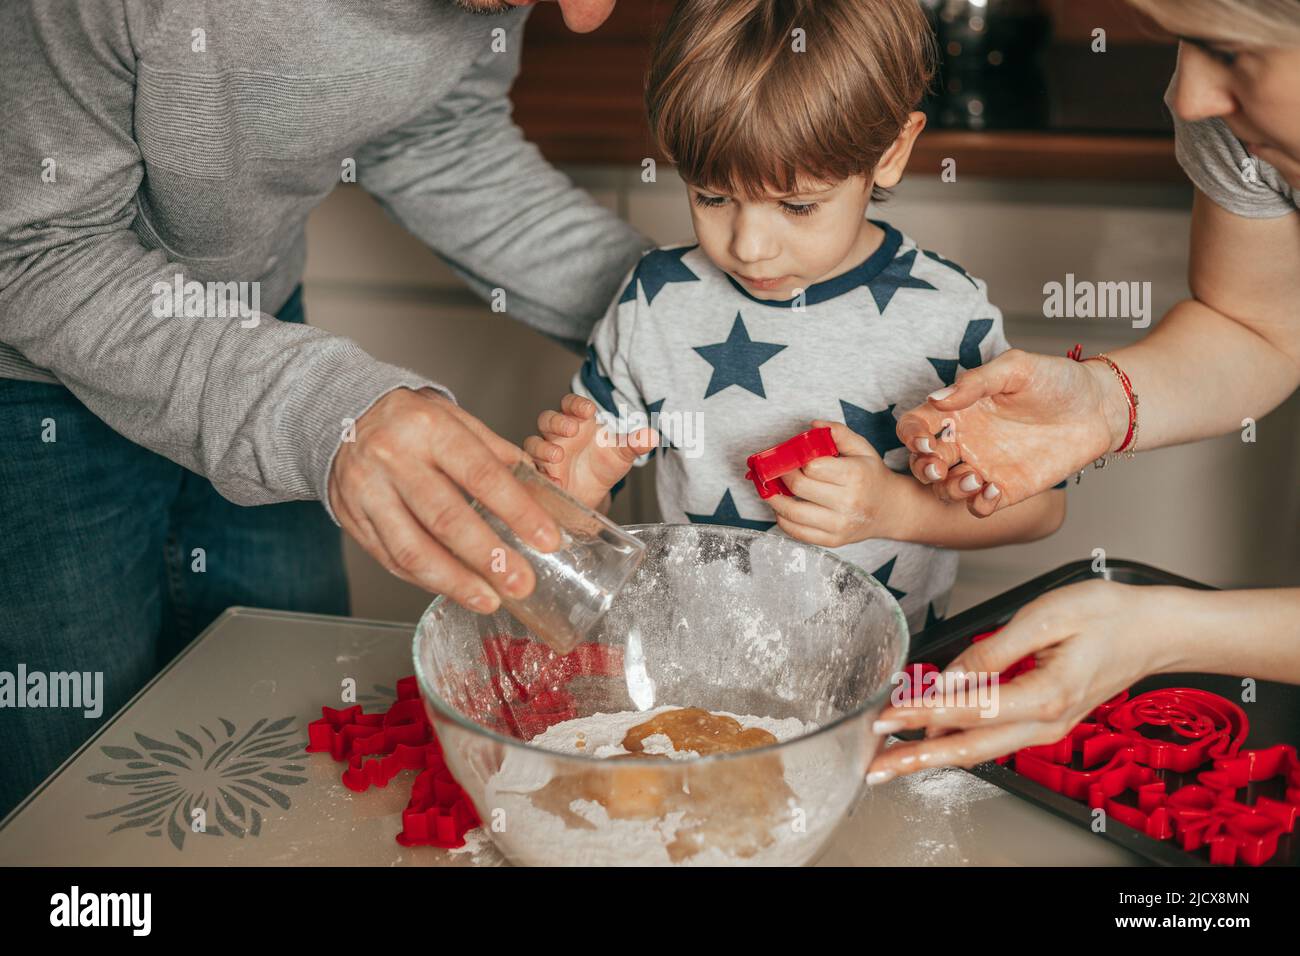 Der kleine Junge, 45 Jahre alt, ist begeistert vom Kneten von Teig. Papa und Mama helfen ihm in der Küche. Frohe Zeit mit der Familie zusammen. Hobby. Teamarbeit. Abgeschlossen Stockfoto